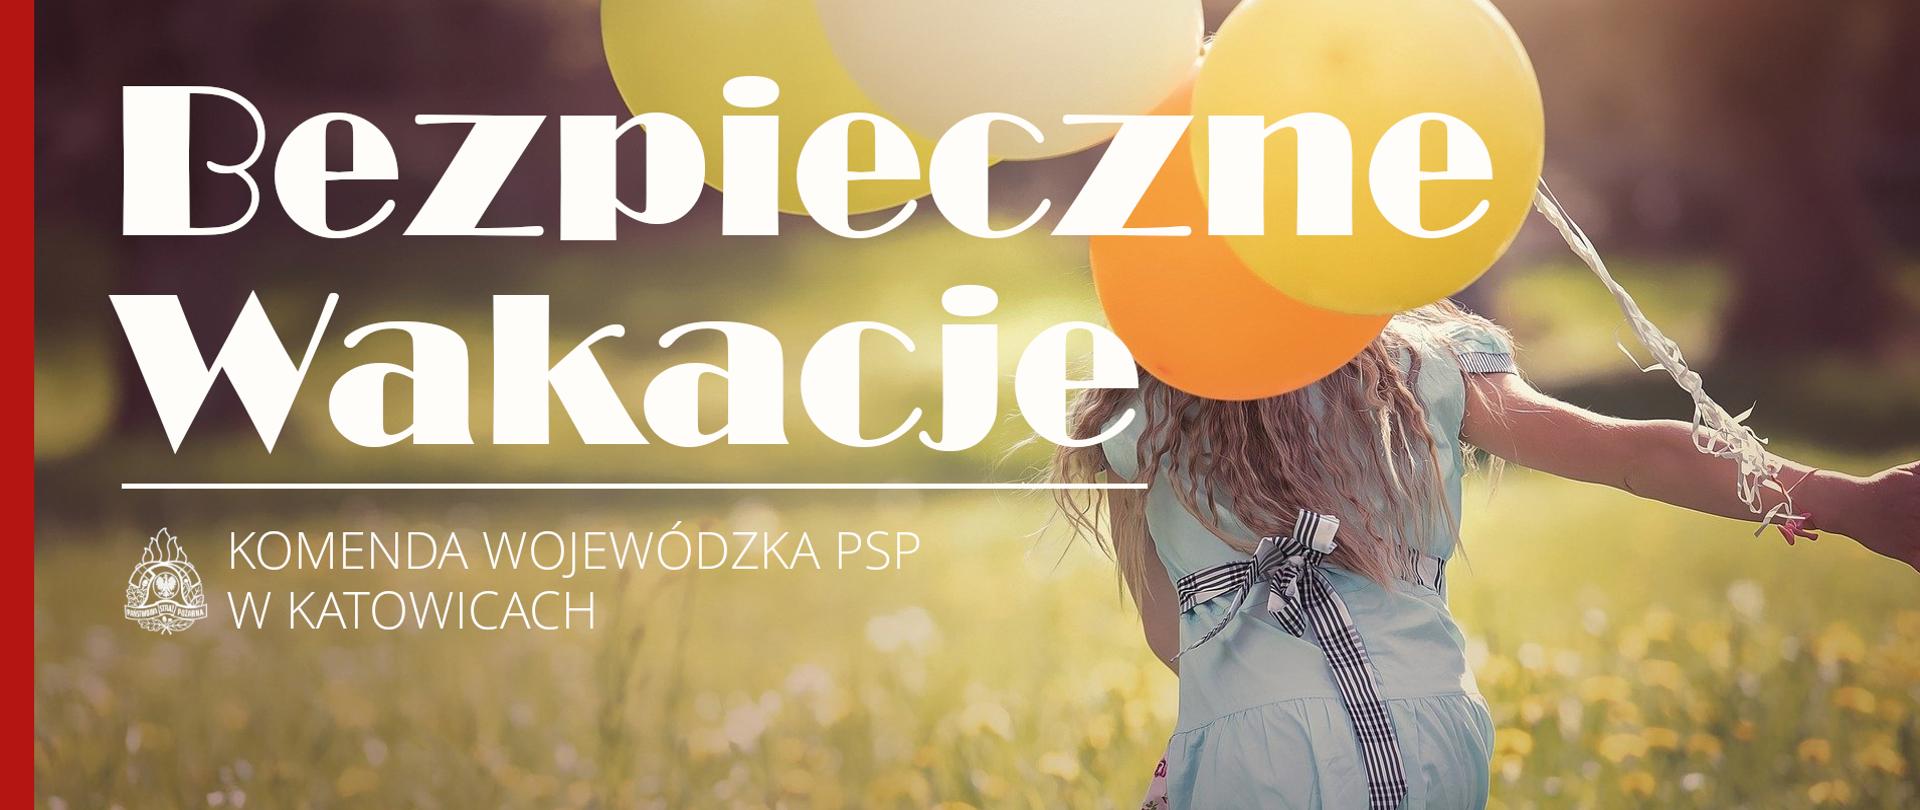 Baner z napisem bezpieczne wakacje, Komenda Wojewódzka PSP w Katowicach, logo PSP, w tle odwrócona tyłem dziewczynka biegnąca przez łąkę z balonami w ręce